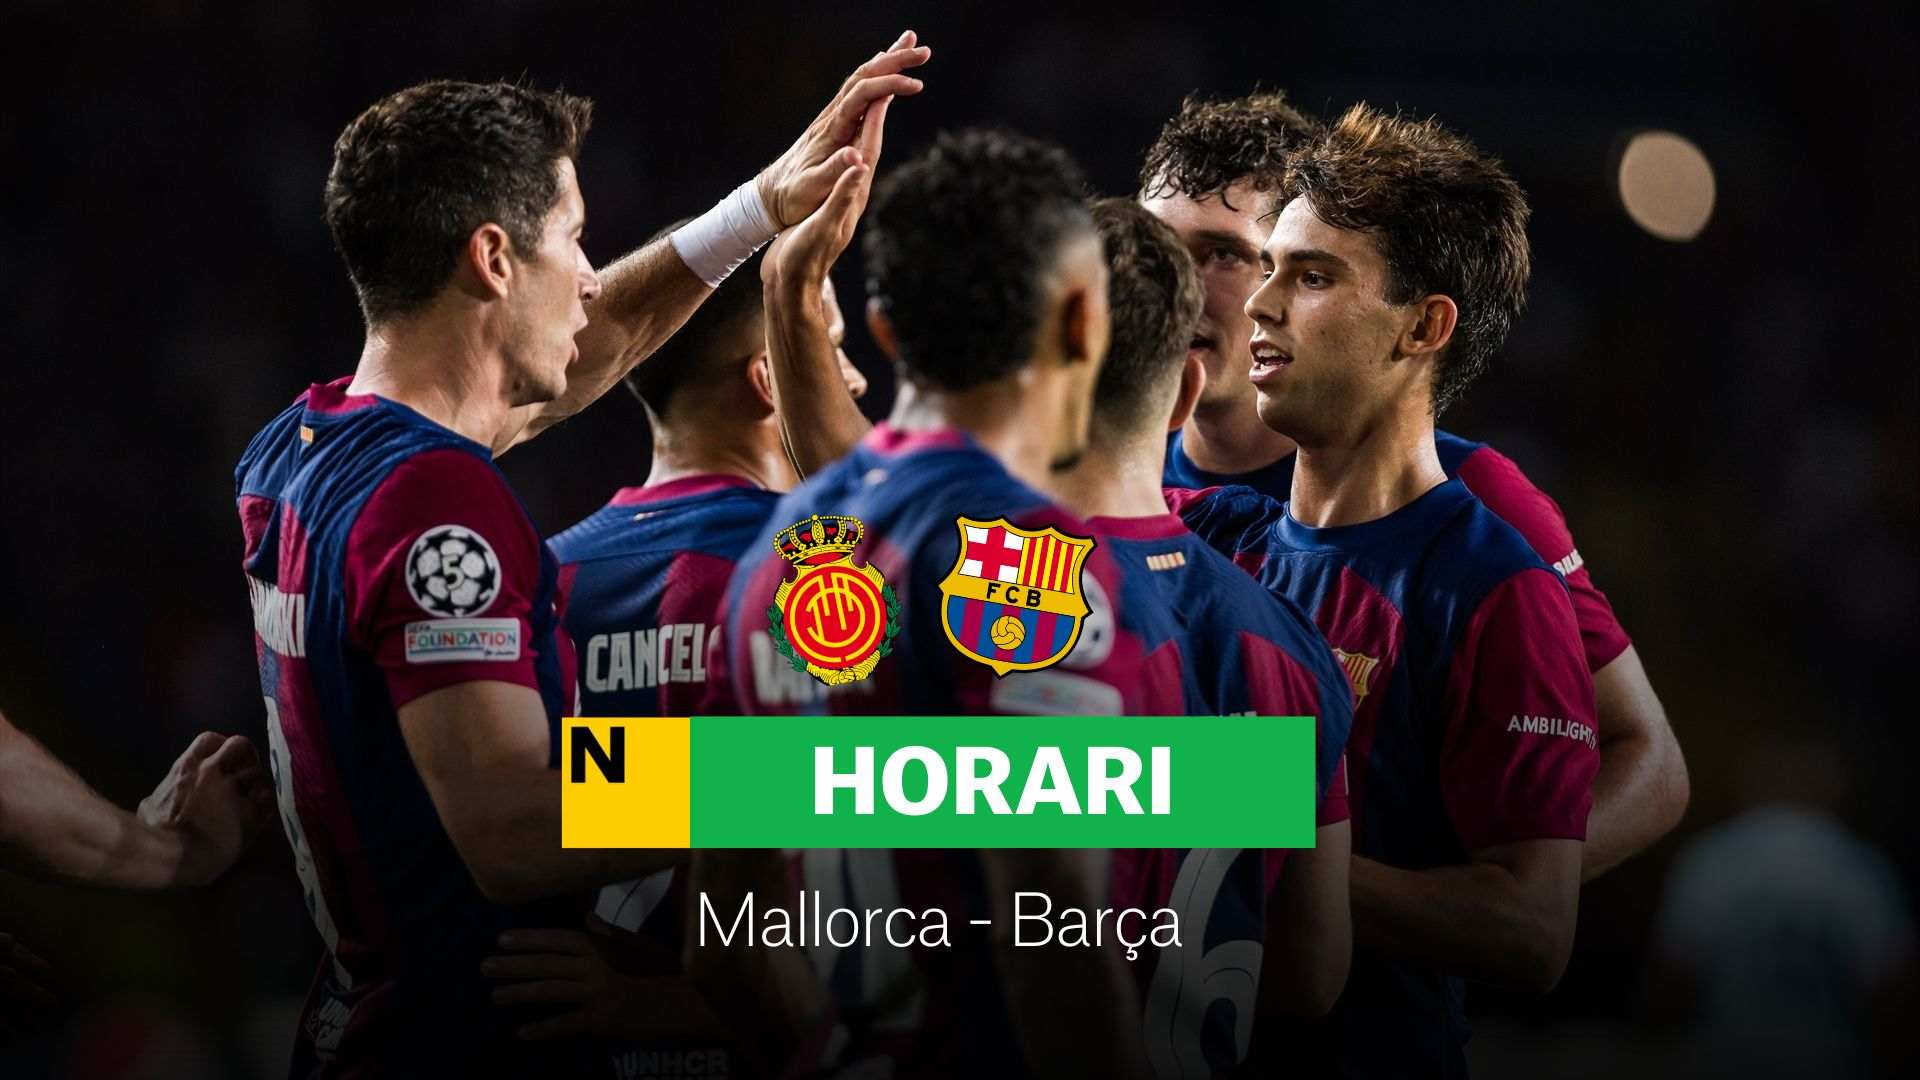 Mallorca - Barcelona, hoy: Alineación, horario y dónde ver la jornada 7 de la Liga